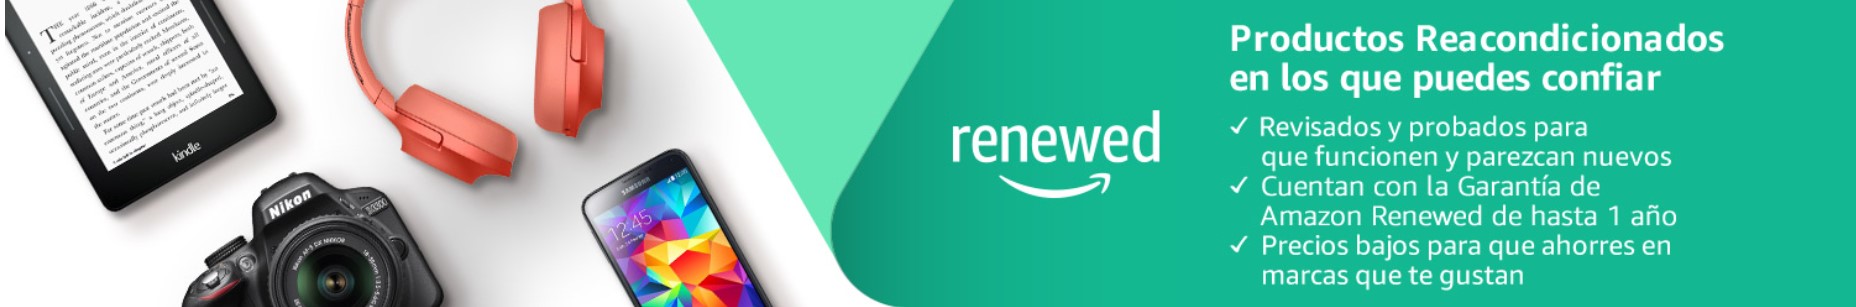 Banner de productos reacondicionados de Amazon Renewed